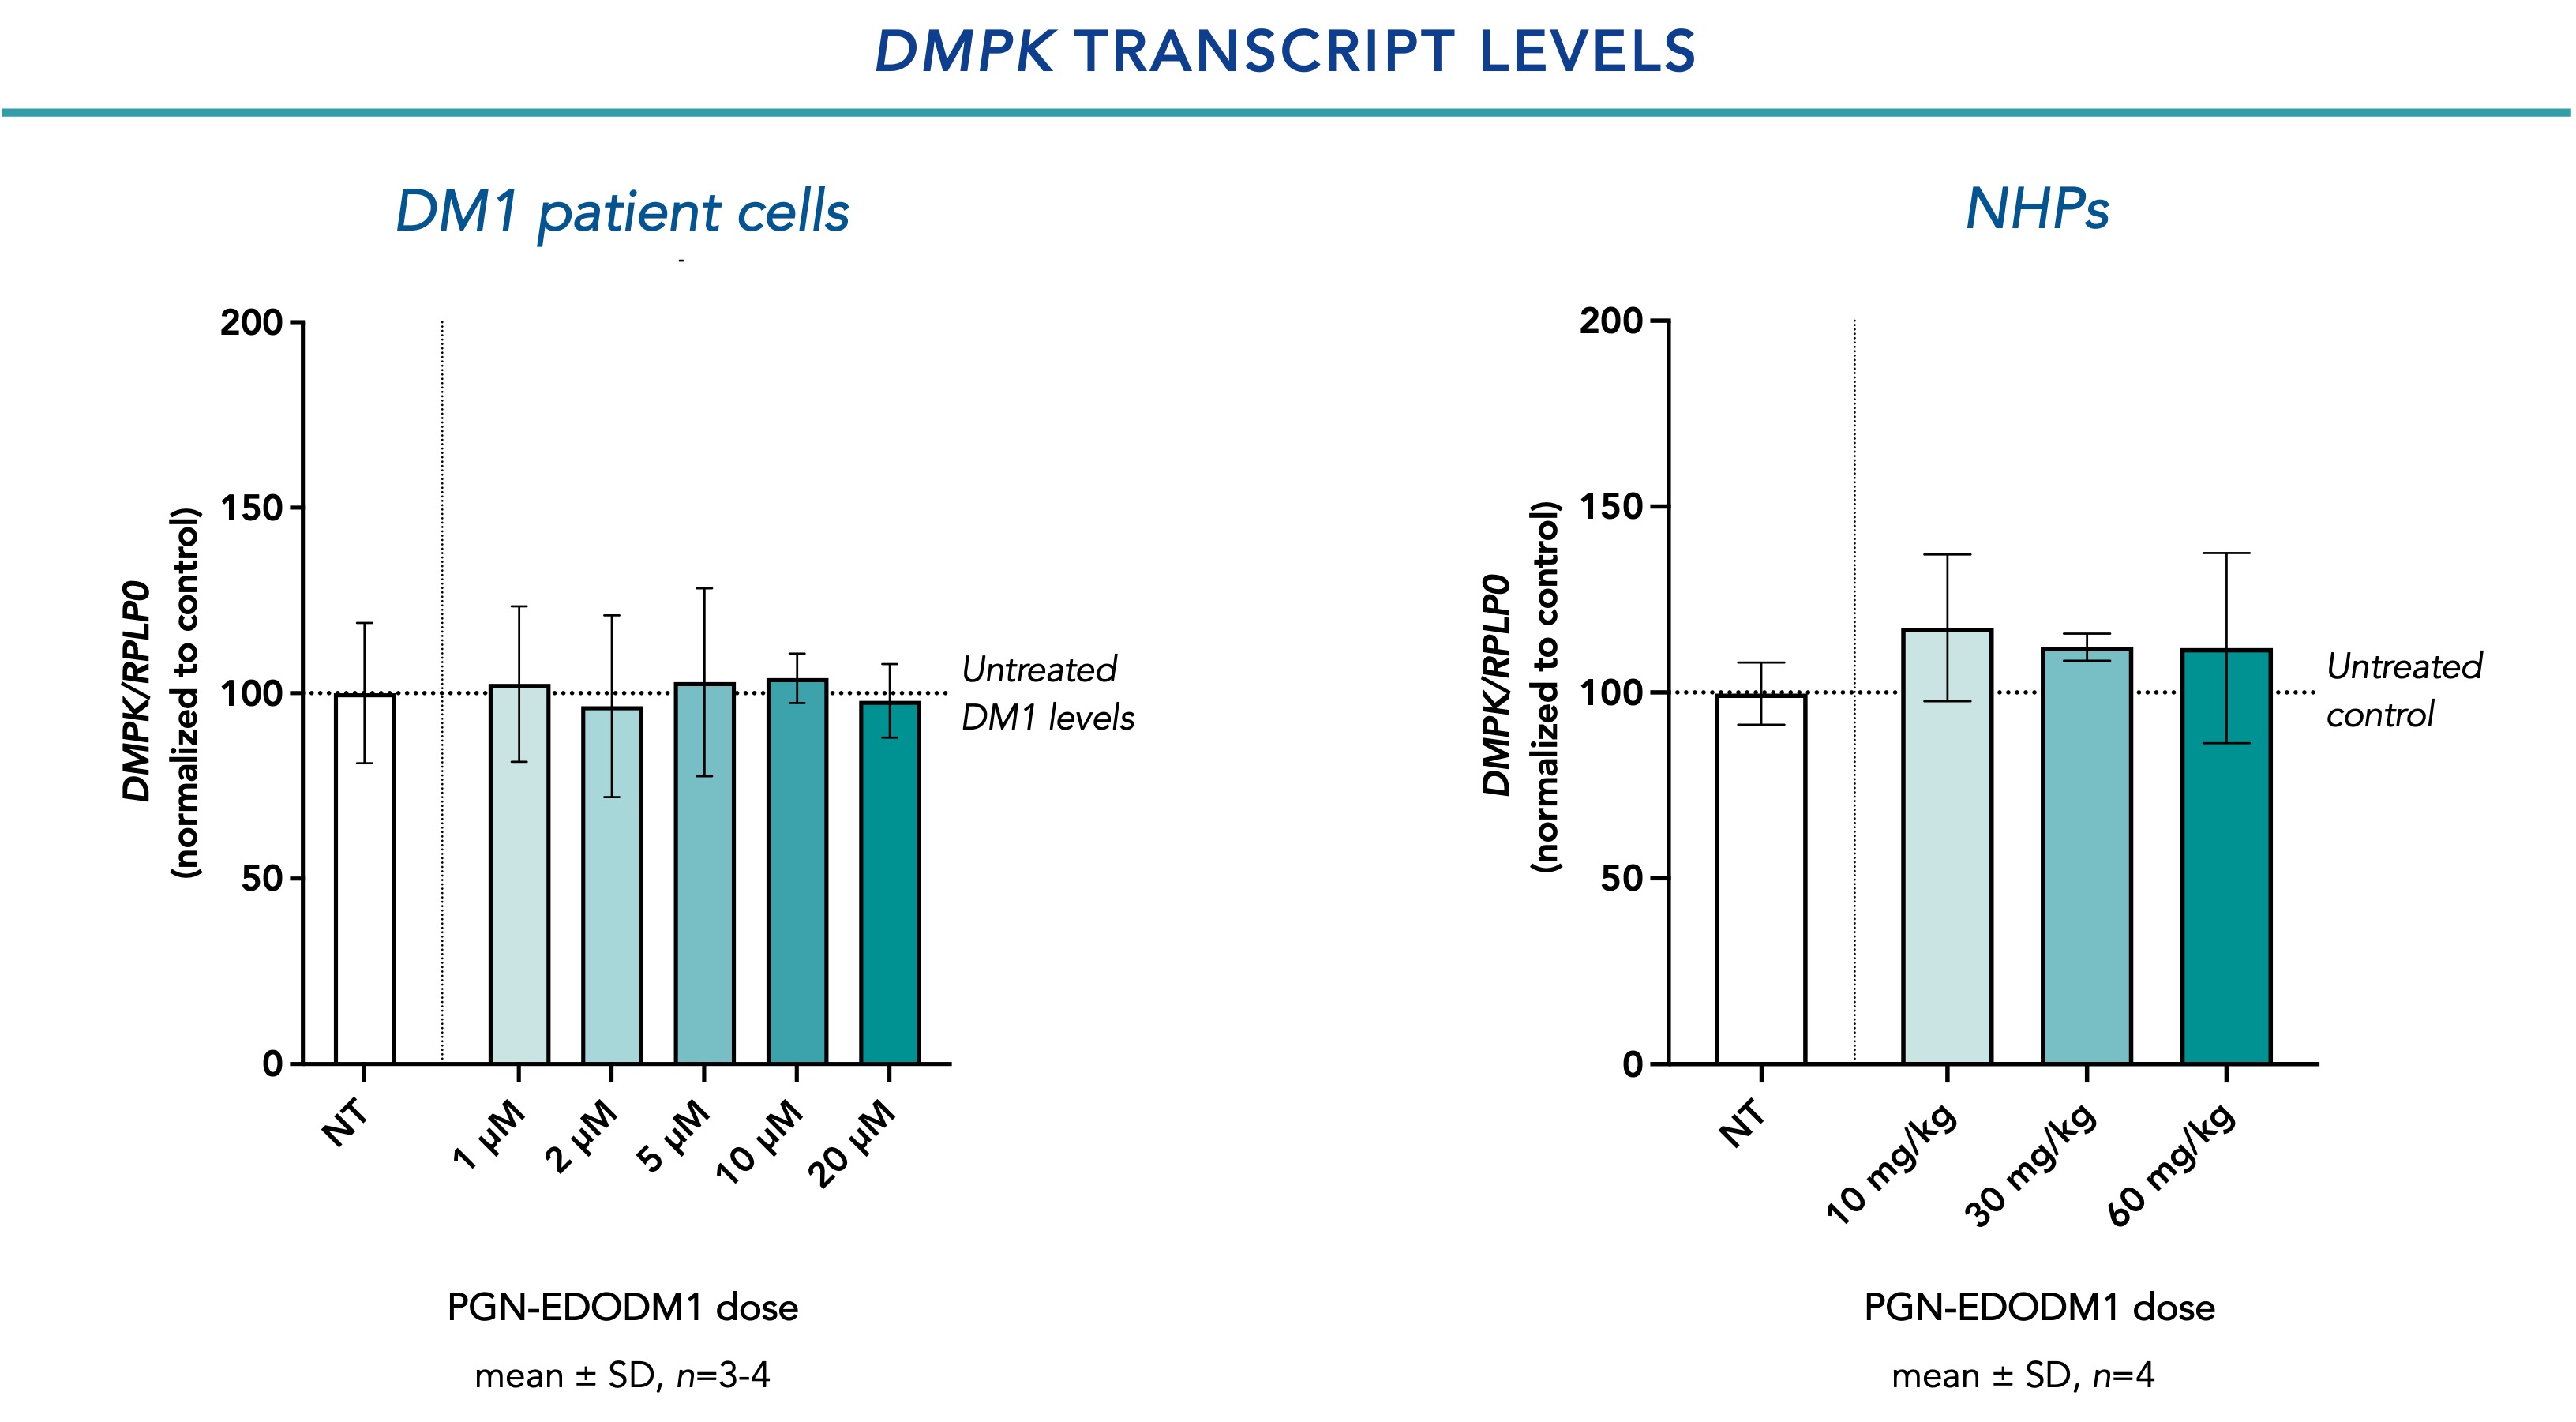 DMPK Transcript Levels